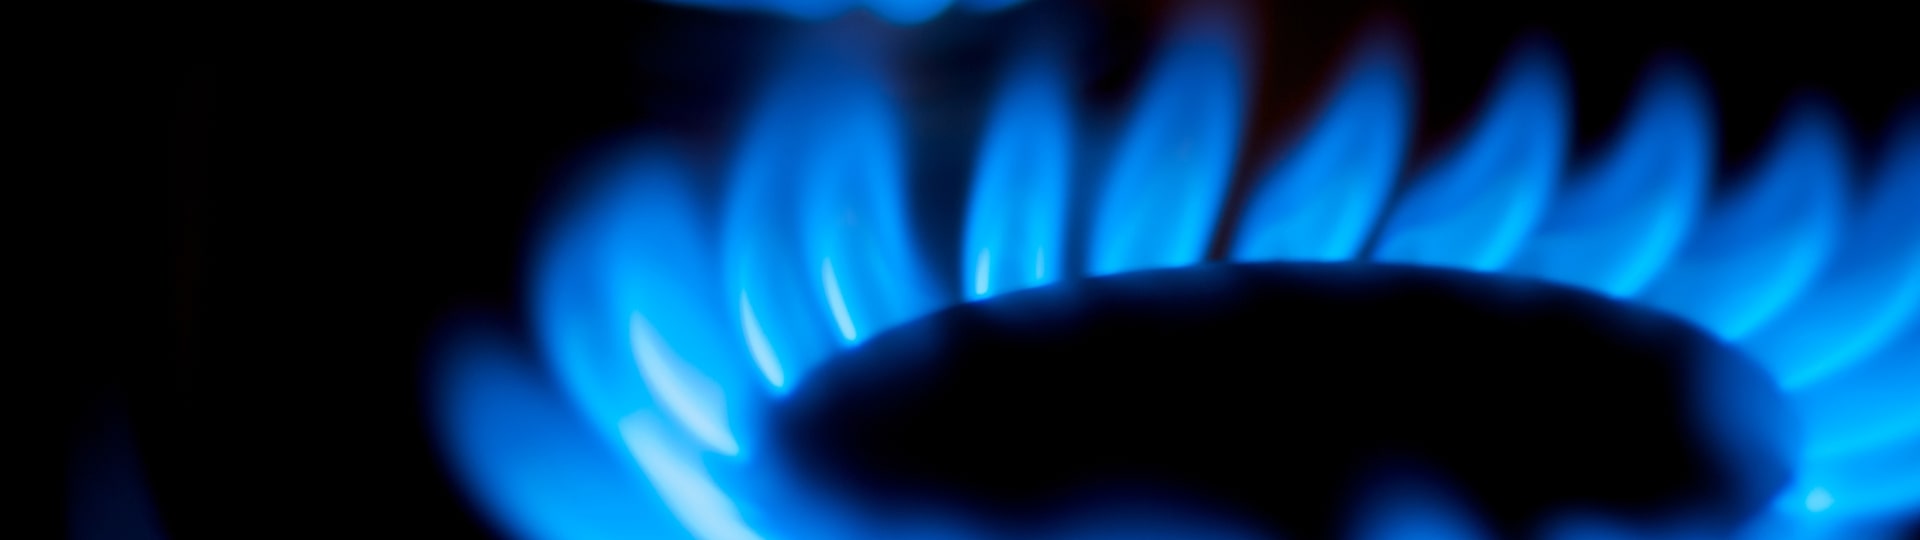 Ceny plynu mohou destabilizovat evropskou ekonomiku